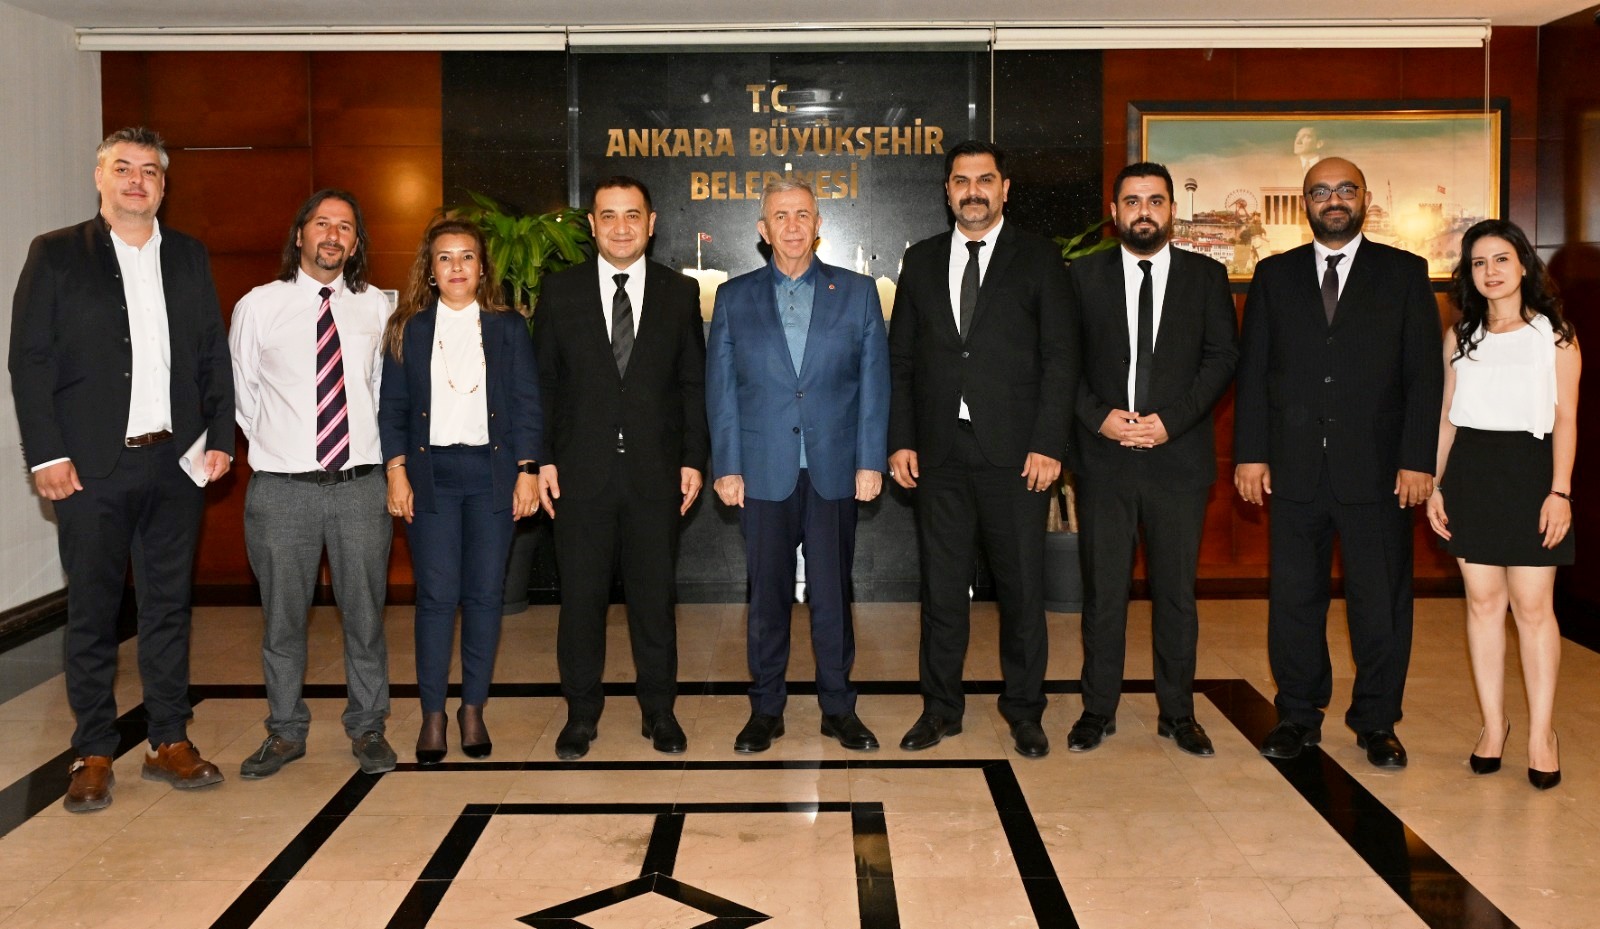 Ankara Büyükşehir Belediyesi (ABB) Başkanı Sn. Mansur Yavaş’ı makamında ziyaret ettik